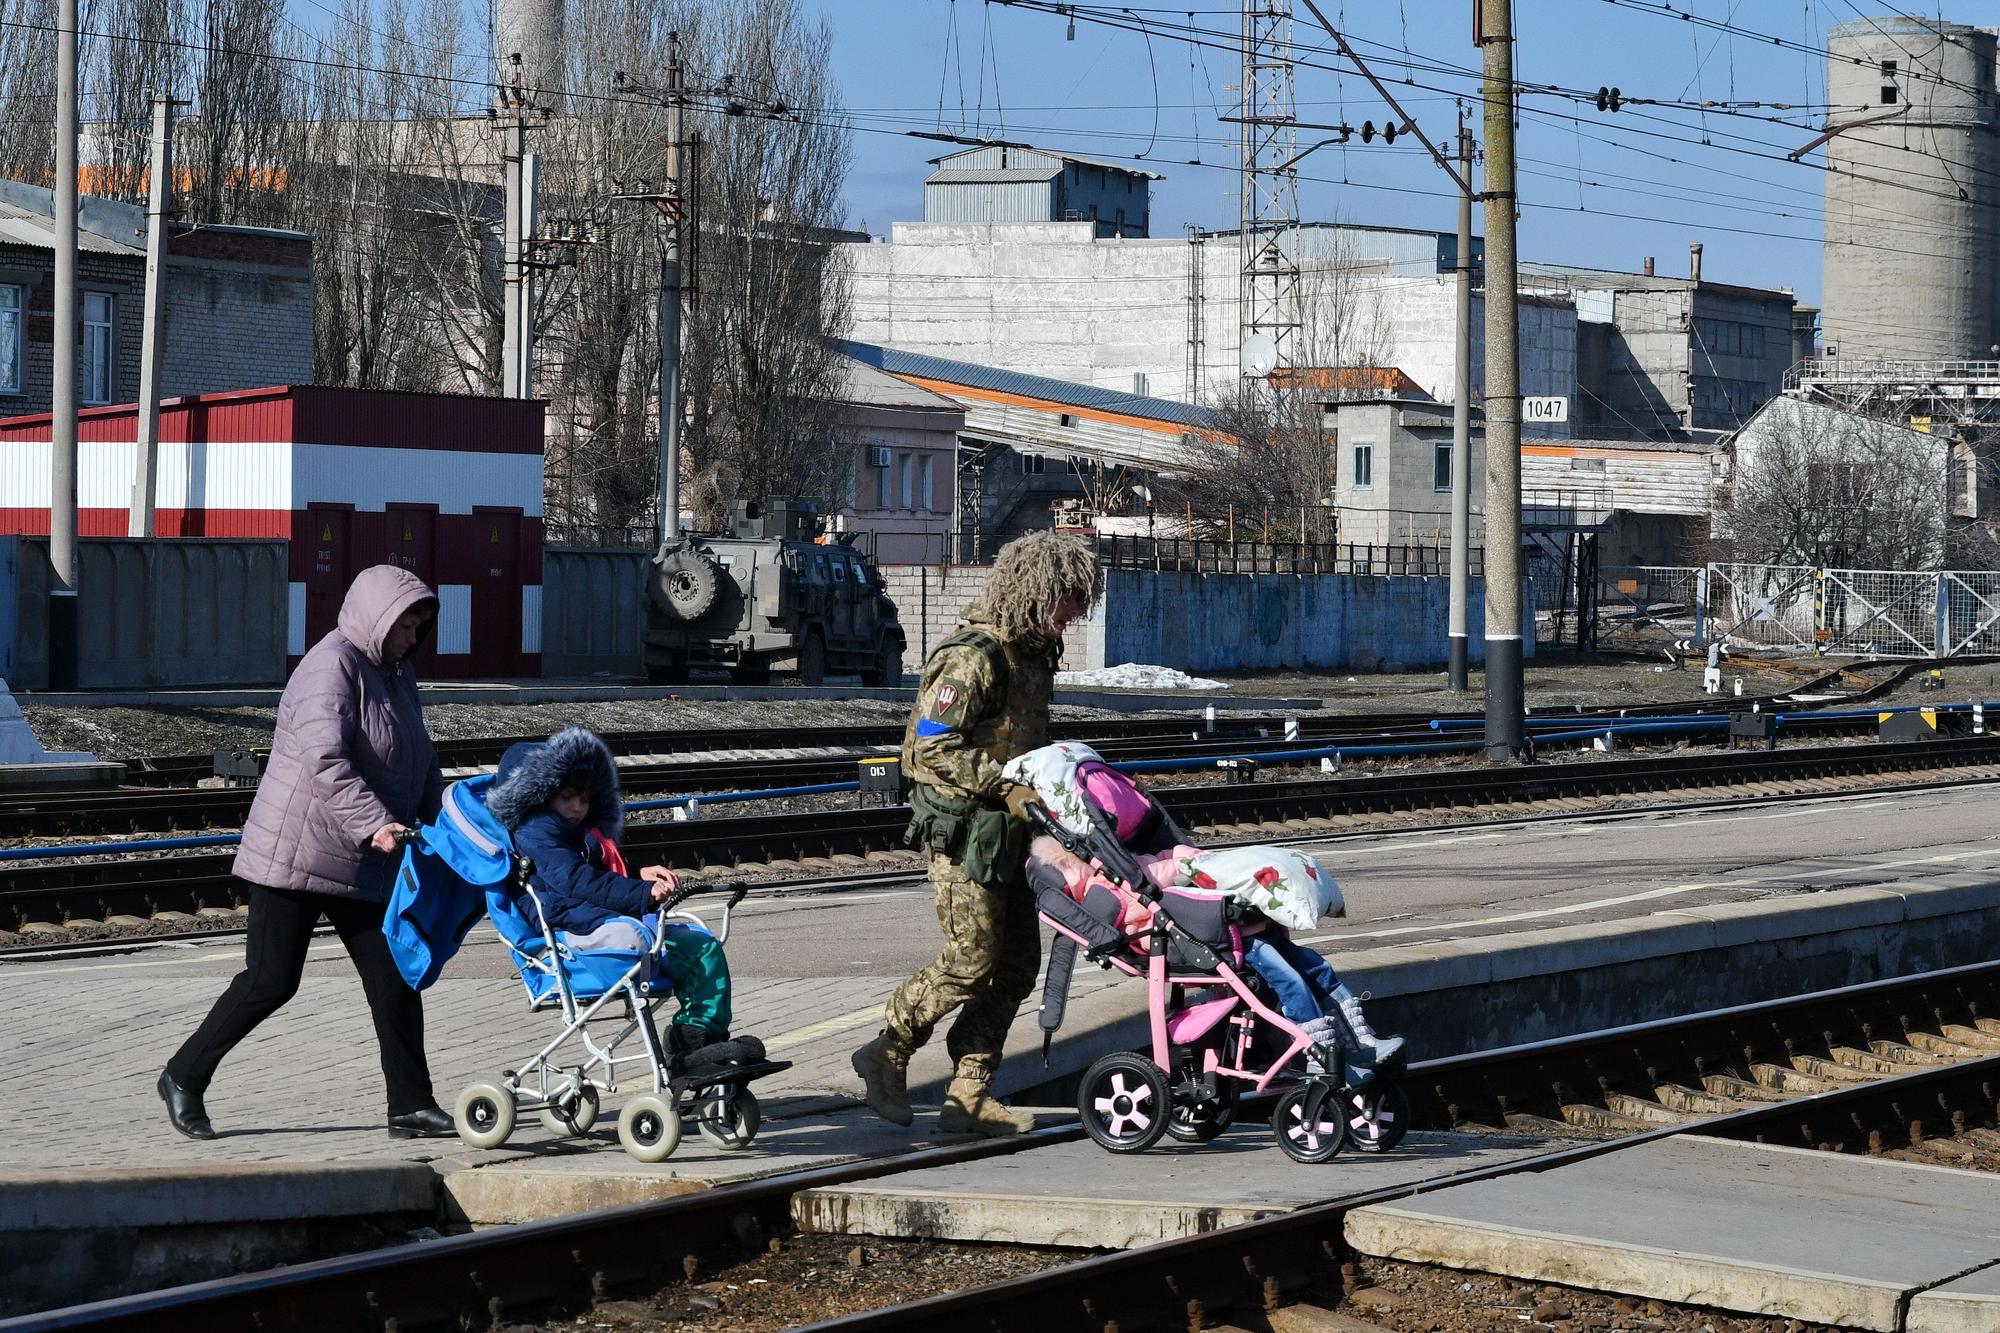 13 de marzo de 2022, Kramatorsk, Ucrania: Una mujer y un militar son vistos ayudando a varios niños a subirse a un tren.